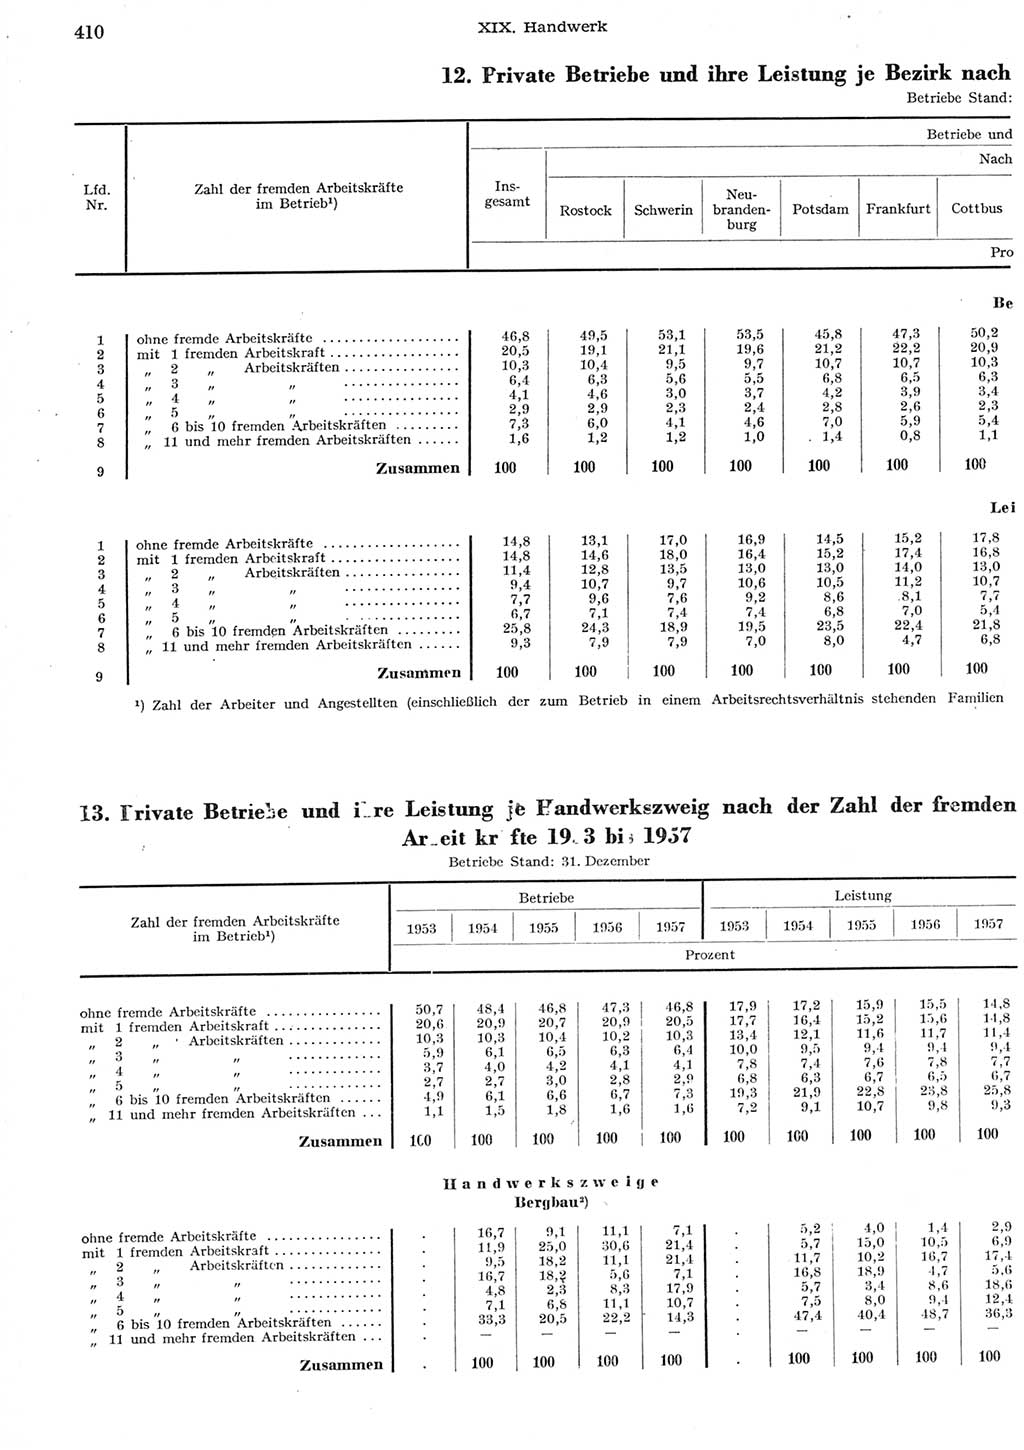 Statistisches Jahrbuch der Deutschen Demokratischen Republik (DDR) 1958, Seite 410 (Stat. Jb. DDR 1958, S. 410)